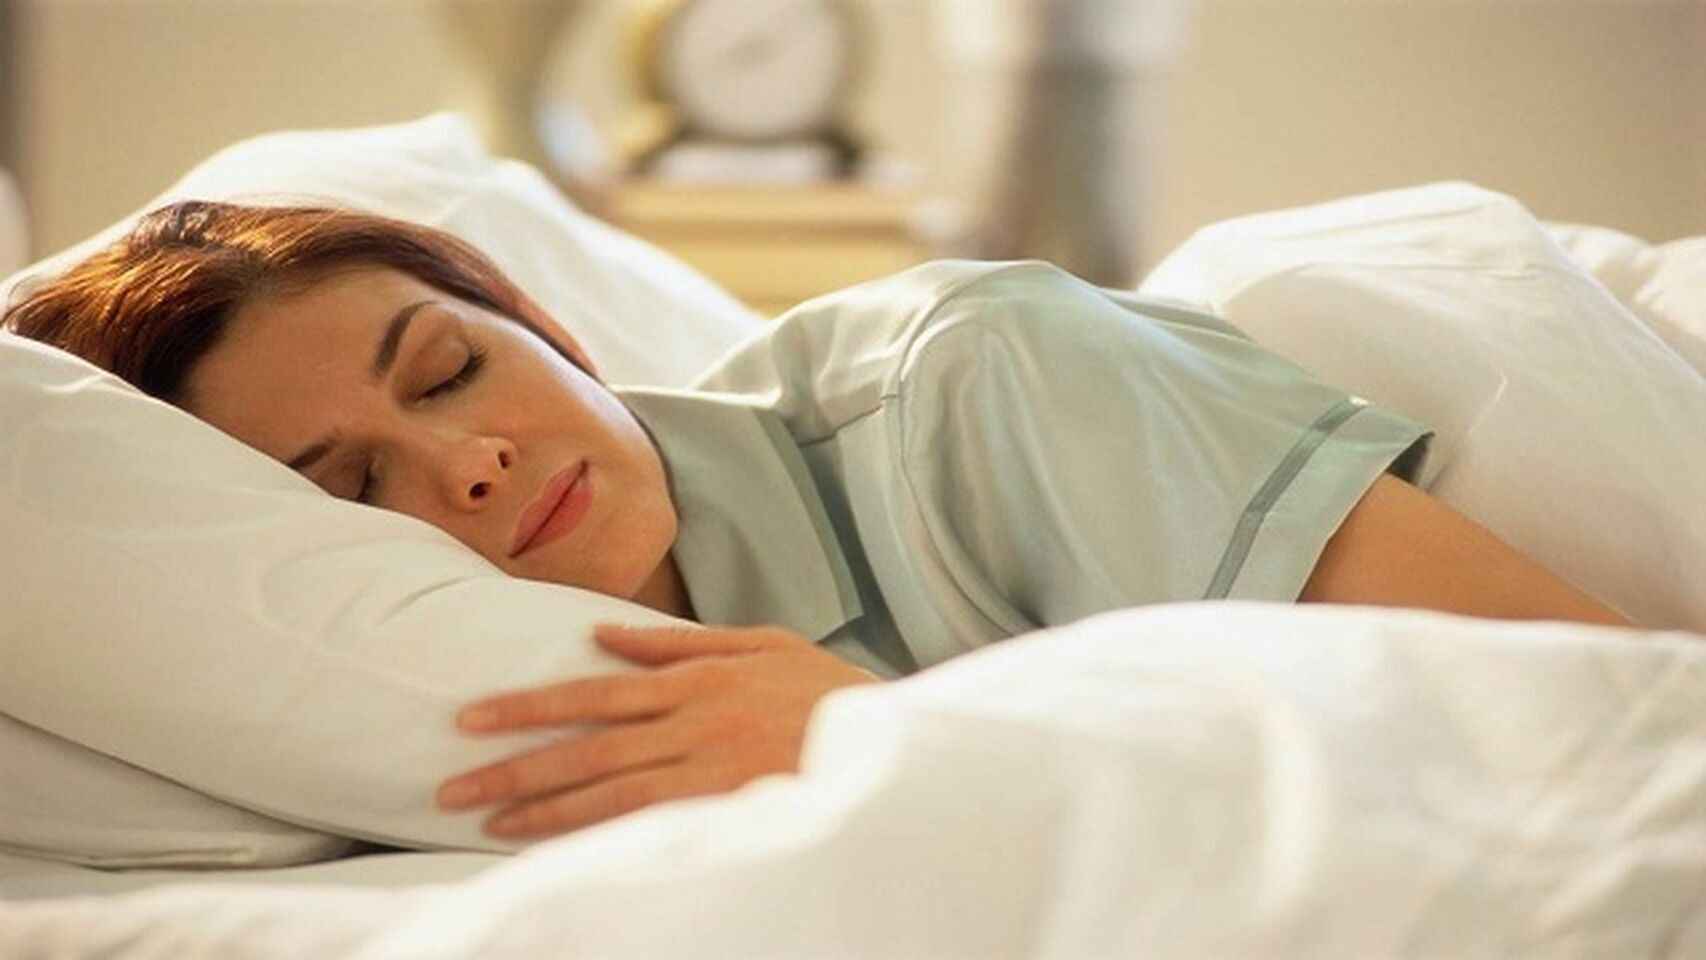 Por qué dormir bien puede curar tu resfriado?